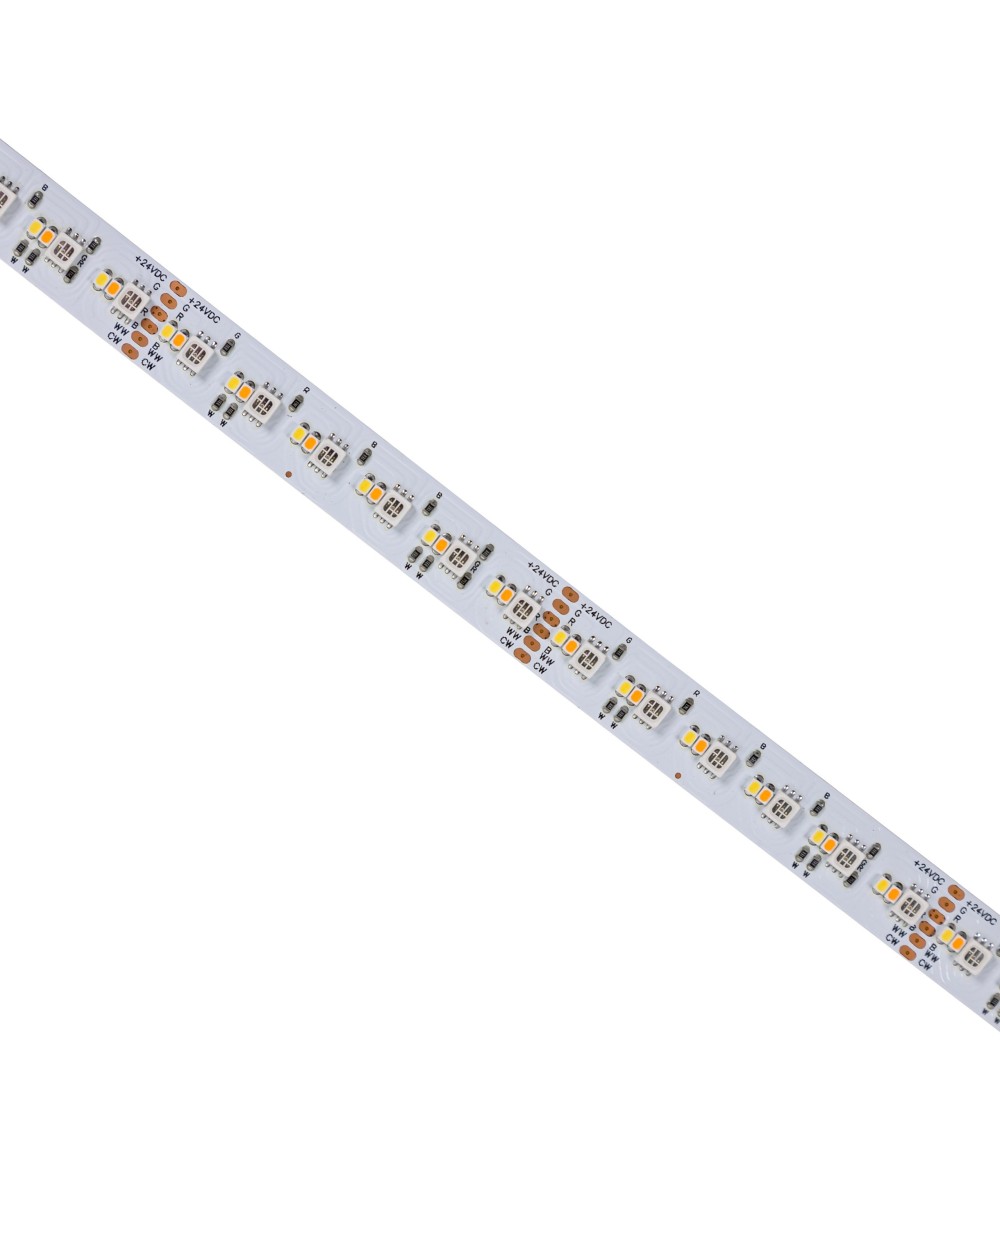 PASEK LED 20W/5m 3535/2216 24V RGBW CCT 96LED/1m   5 LAT 1M (rolka 5m) - w silikonie NANO - Spectrum LED